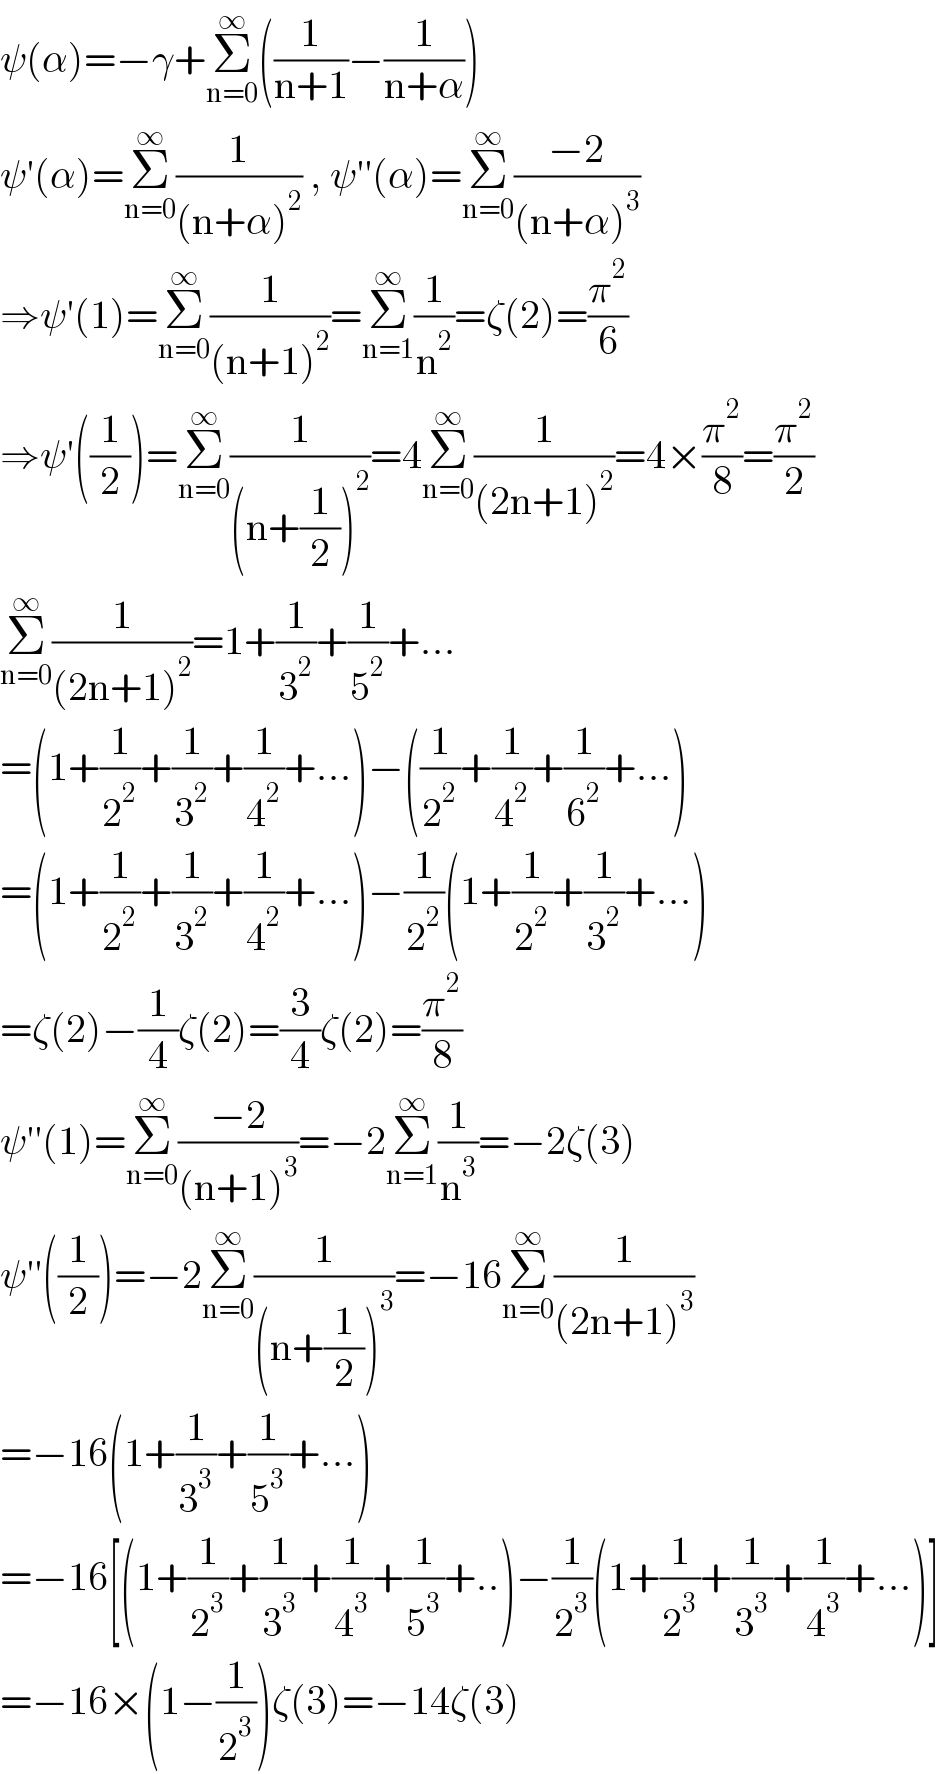 ψ(α)=−γ+Σ_(n=0) ^∞ ((1/(n+1))−(1/(n+α)))  ψ′(α)=Σ_(n=0) ^∞ (1/((n+α)^2 )) , ψ′′(α)=Σ_(n=0) ^∞ ((−2)/((n+α)^3 ))  ⇒ψ′(1)=Σ_(n=0) ^∞ (1/((n+1)^2 ))=Σ_(n=1) ^∞ (1/n^2 )=ζ(2)=(π^2 /6)  ⇒ψ′((1/2))=Σ_(n=0) ^∞ (1/((n+(1/2))^2 ))=4Σ_(n=0) ^∞ (1/((2n+1)^2 ))=4×(π^2 /8)=(π^2 /2)  Σ_(n=0) ^∞ (1/((2n+1)^2 ))=1+(1/3^2 )+(1/5^2 )+...  =(1+(1/2^2 )+(1/3^2 )+(1/4^2 )+...)−((1/2^2 )+(1/4^2 )+(1/6^2 )+...)  =(1+(1/2^2 )+(1/3^2 )+(1/4^2 )+...)−(1/2^2 )(1+(1/2^2 )+(1/3^2 )+...)  =ζ(2)−(1/4)ζ(2)=(3/4)ζ(2)=(π^2 /8)  ψ′′(1)=Σ_(n=0) ^∞ ((−2)/((n+1)^3 ))=−2Σ_(n=1) ^∞ (1/n^3 )=−2ζ(3)  ψ′′((1/2))=−2Σ_(n=0) ^∞ (1/((n+(1/2))^3 ))=−16Σ_(n=0) ^∞ (1/((2n+1)^3 ))  =−16(1+(1/3^3 )+(1/5^3 )+...)  =−16[(1+(1/2^3 )+(1/3^3 )+(1/4^3 )+(1/5^3 )+..)−(1/2^3 )(1+(1/2^3 )+(1/3^3 )+(1/4^3 )+...)]  =−16×(1−(1/2^3 ))ζ(3)=−14ζ(3)  